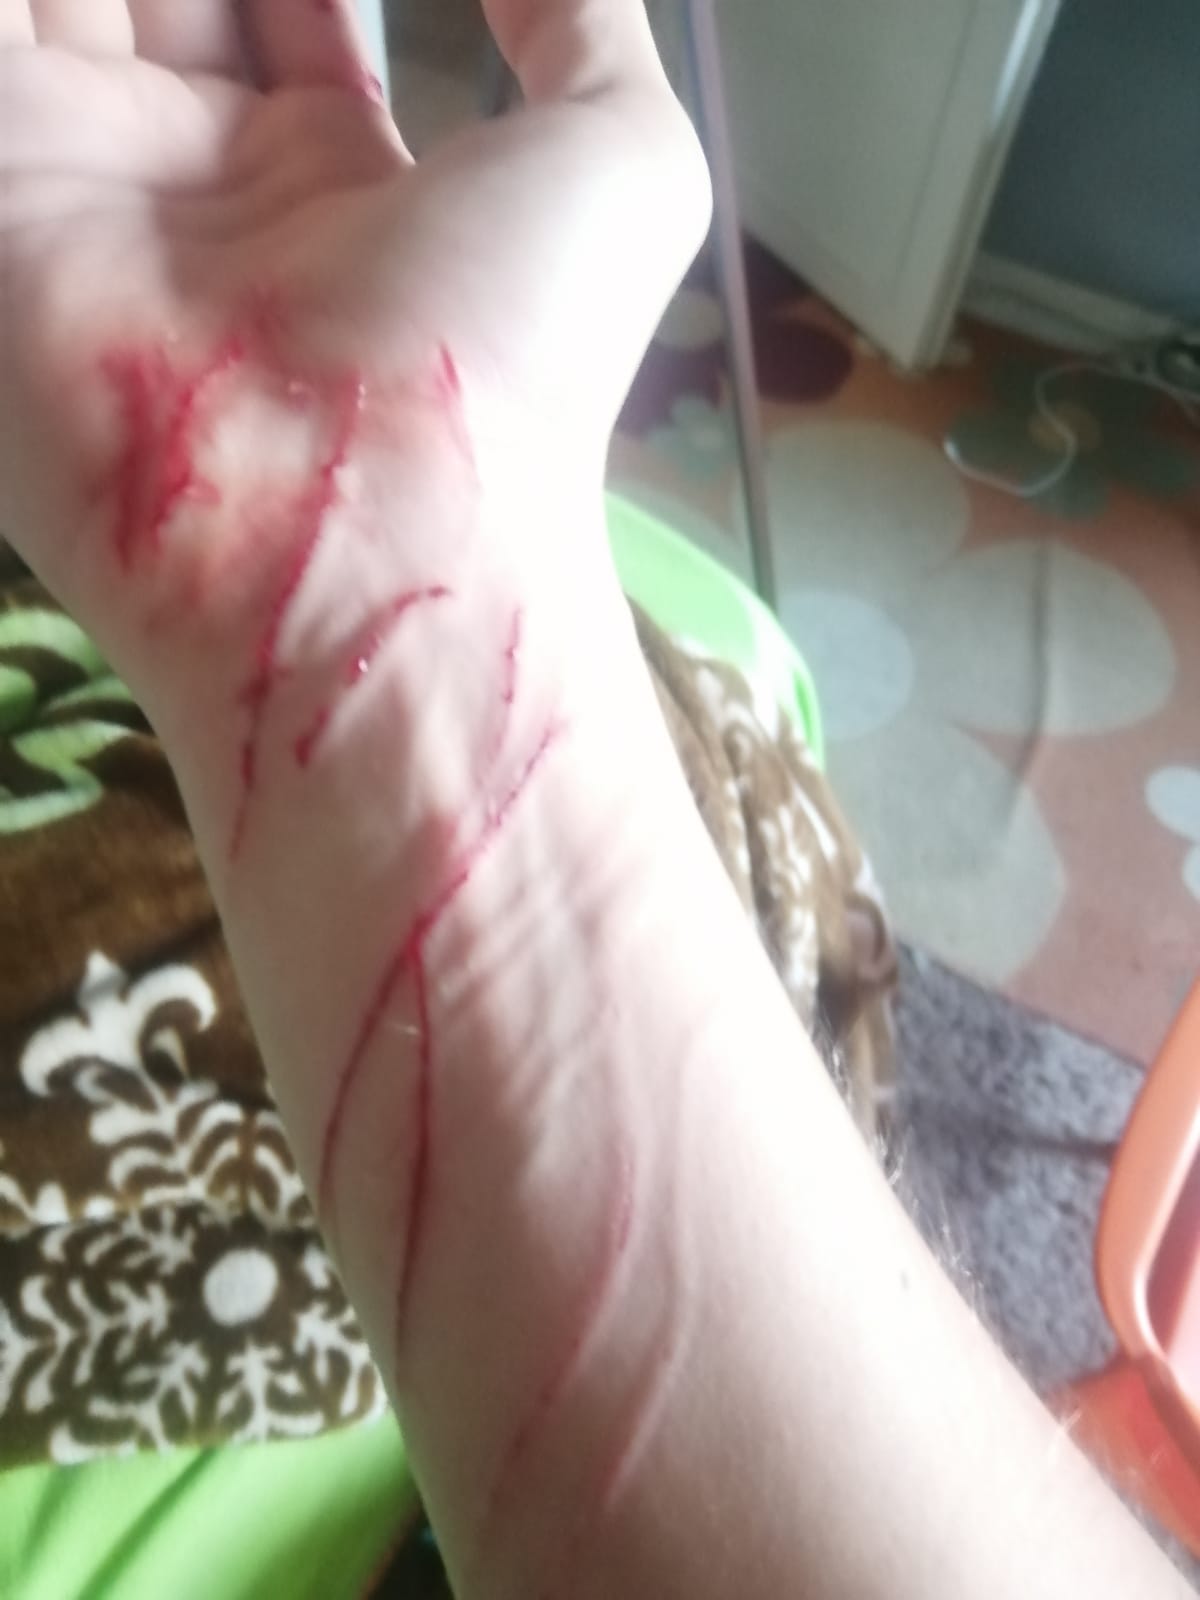 kedi elimi kolumu parçaladı parmağım kesilecek DonanımHaber Forum